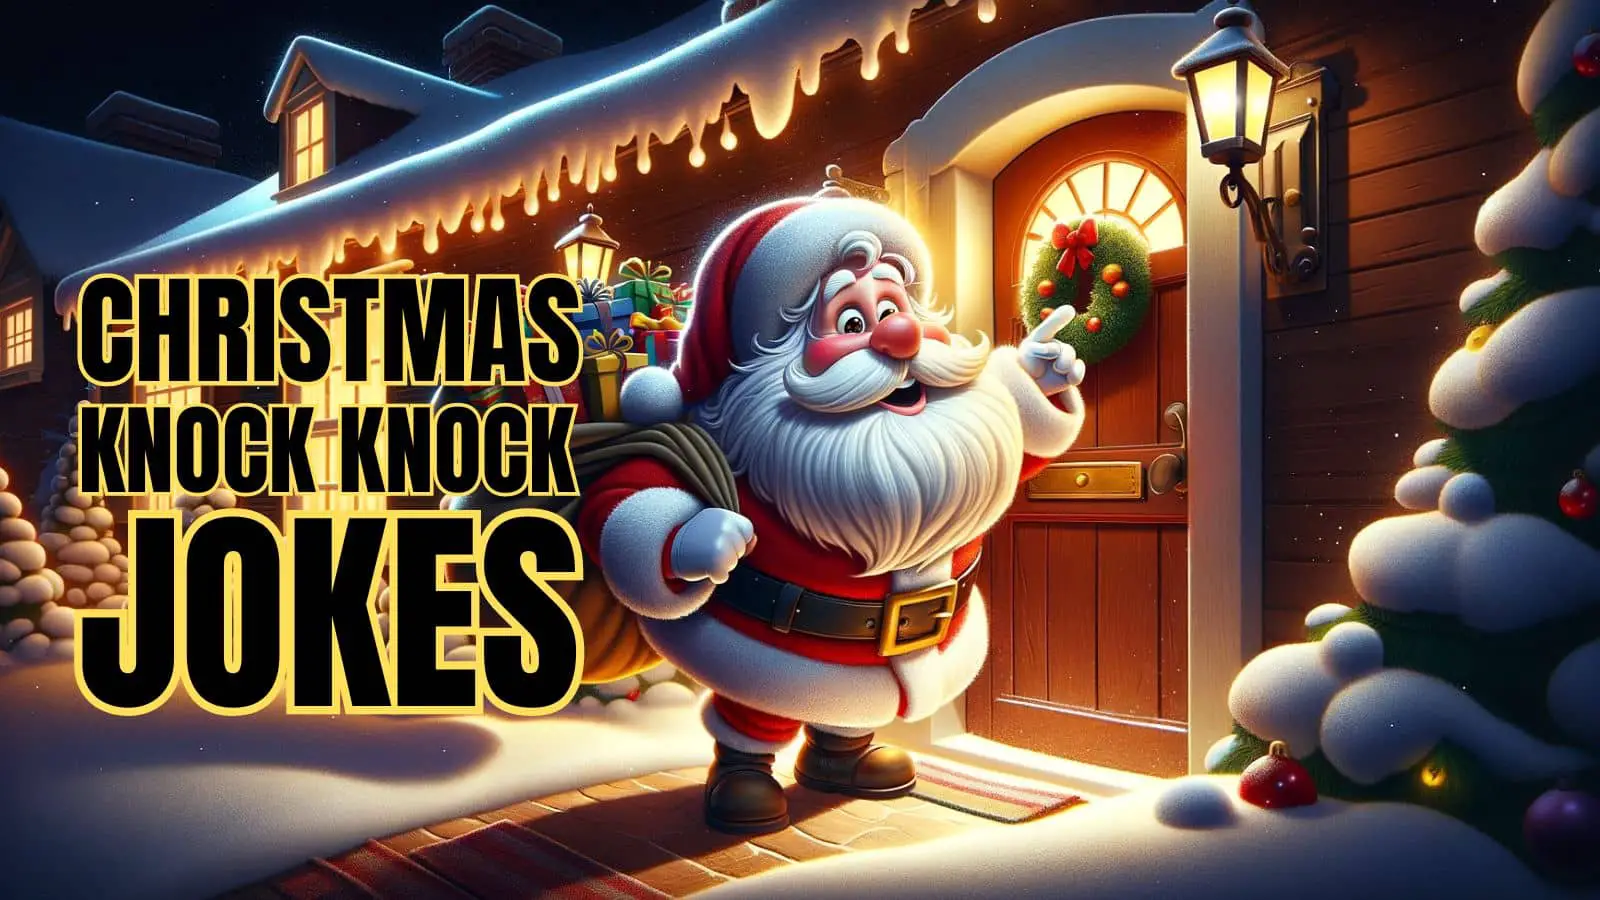 Funny Christmas Knock Knock Jokes On Holidays